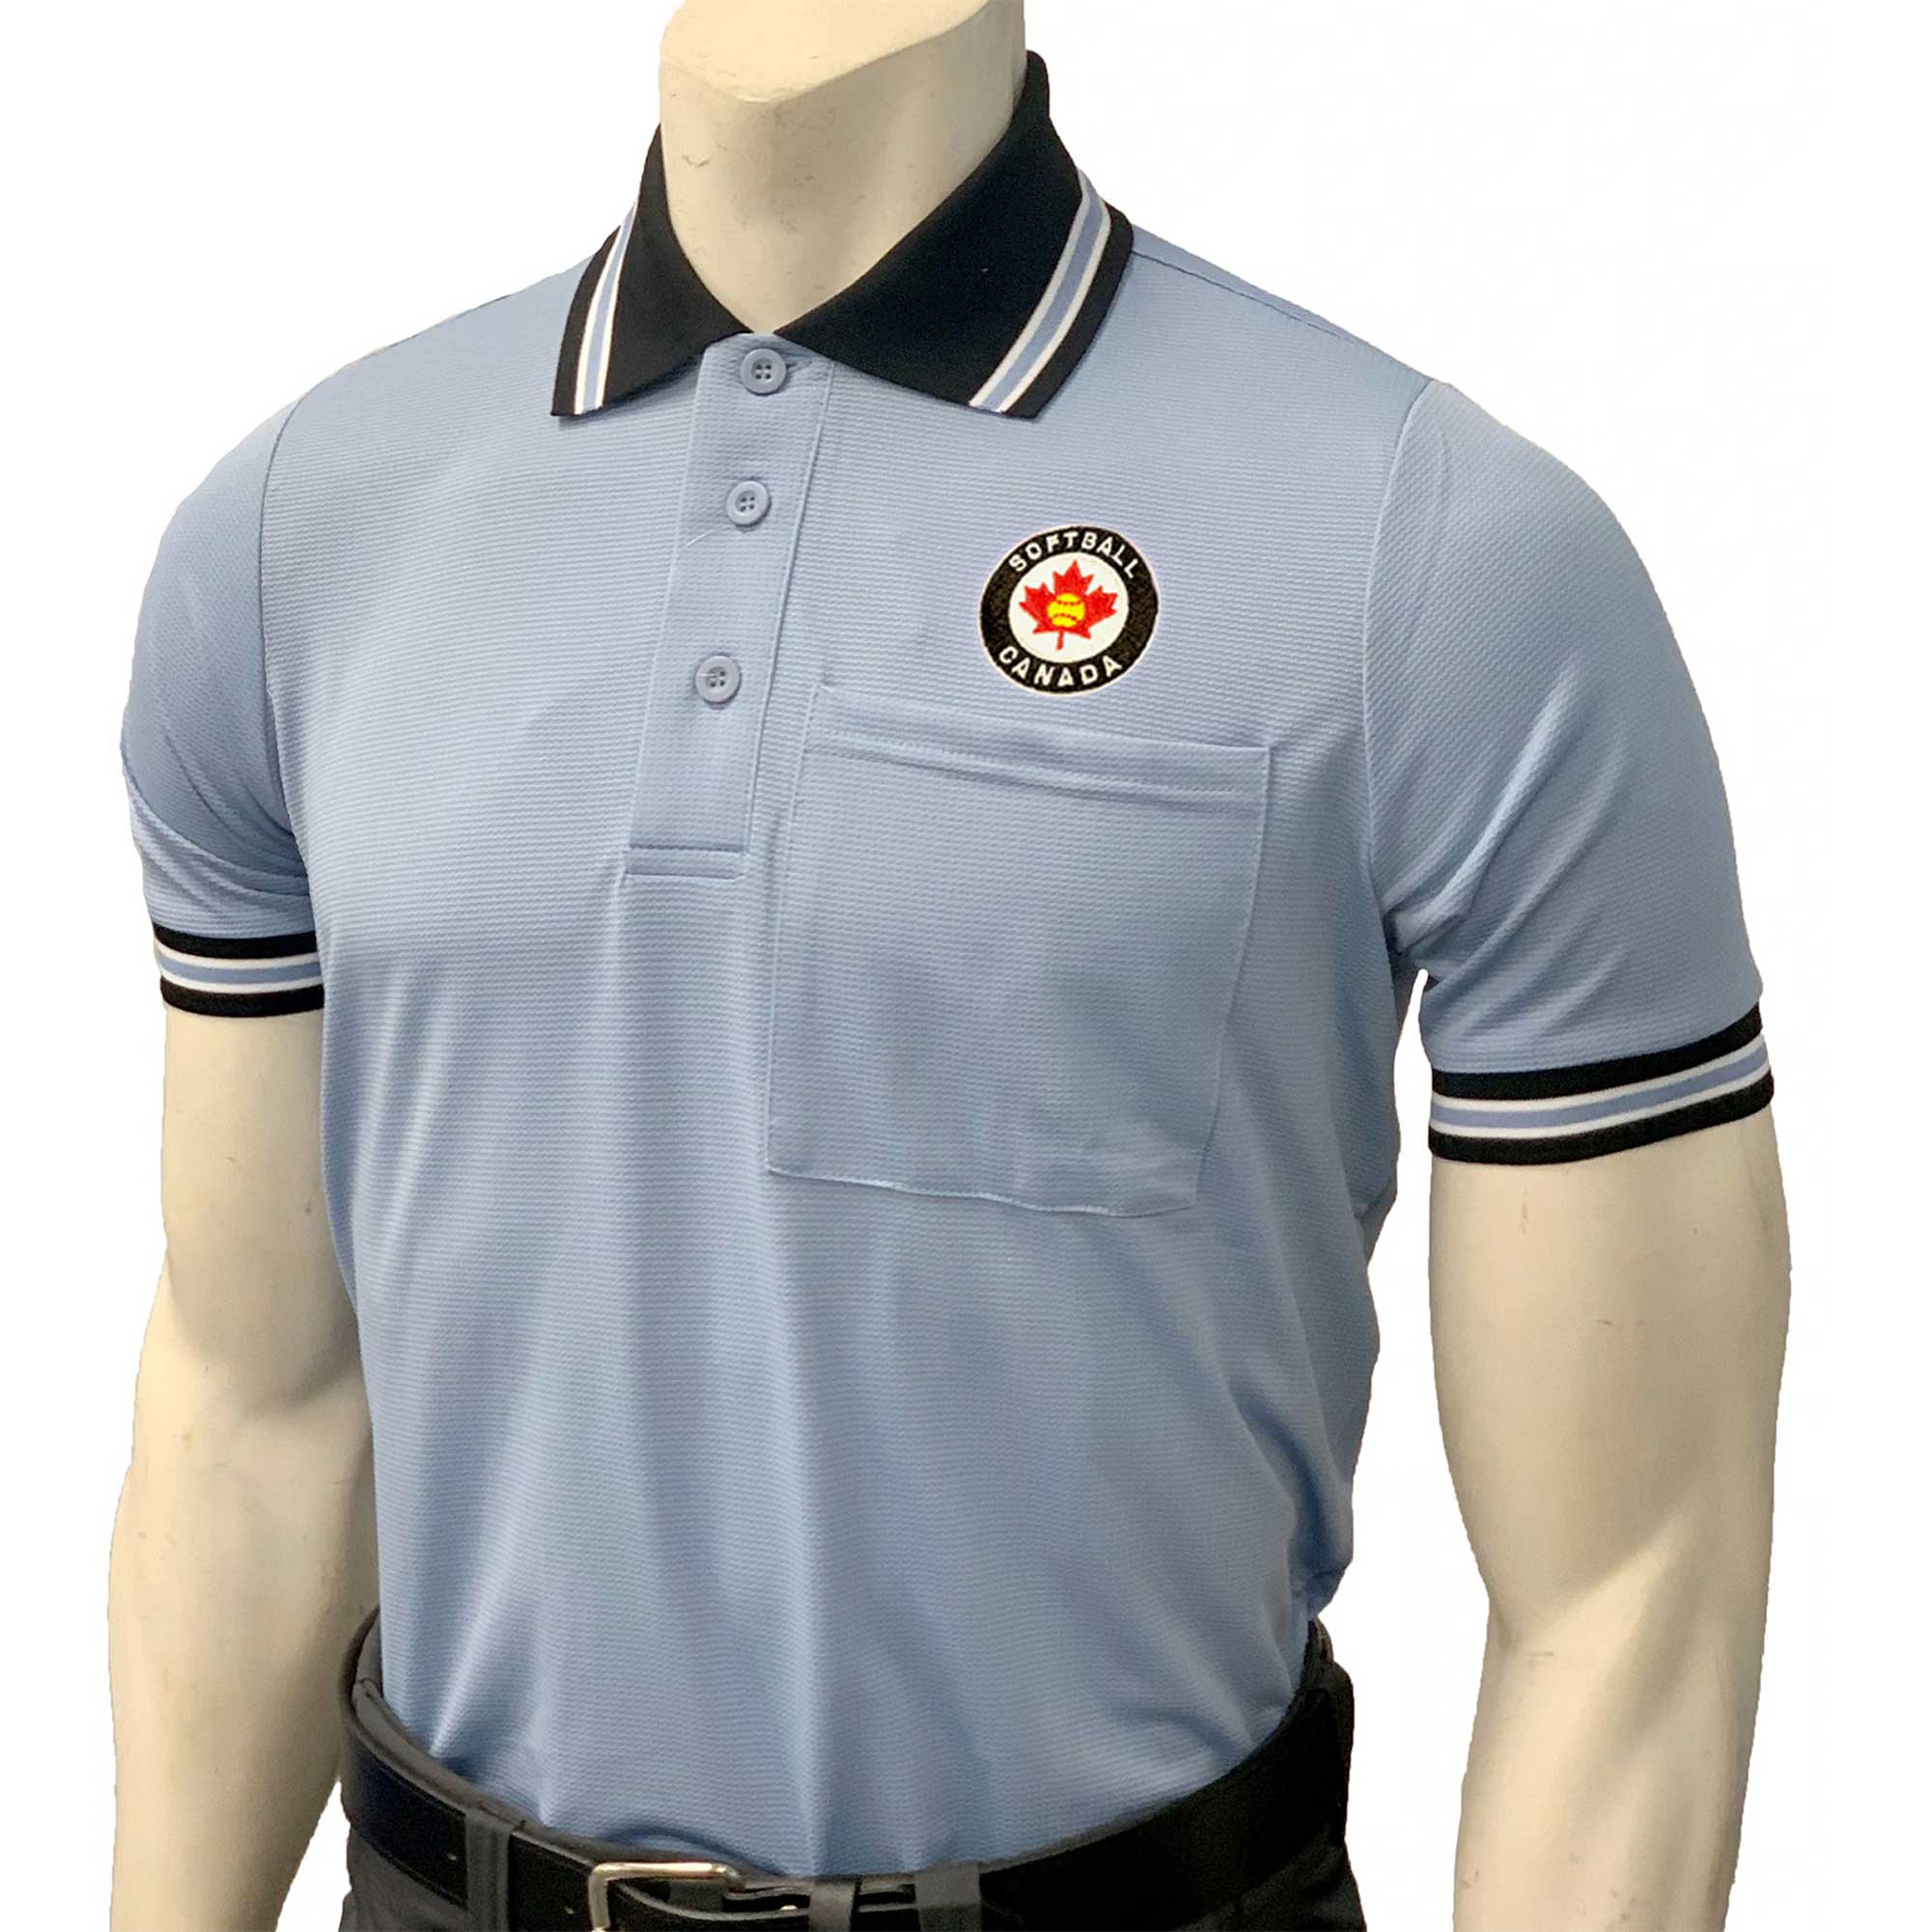 Softball Canada Body Flex Mesh Umpire Shirt